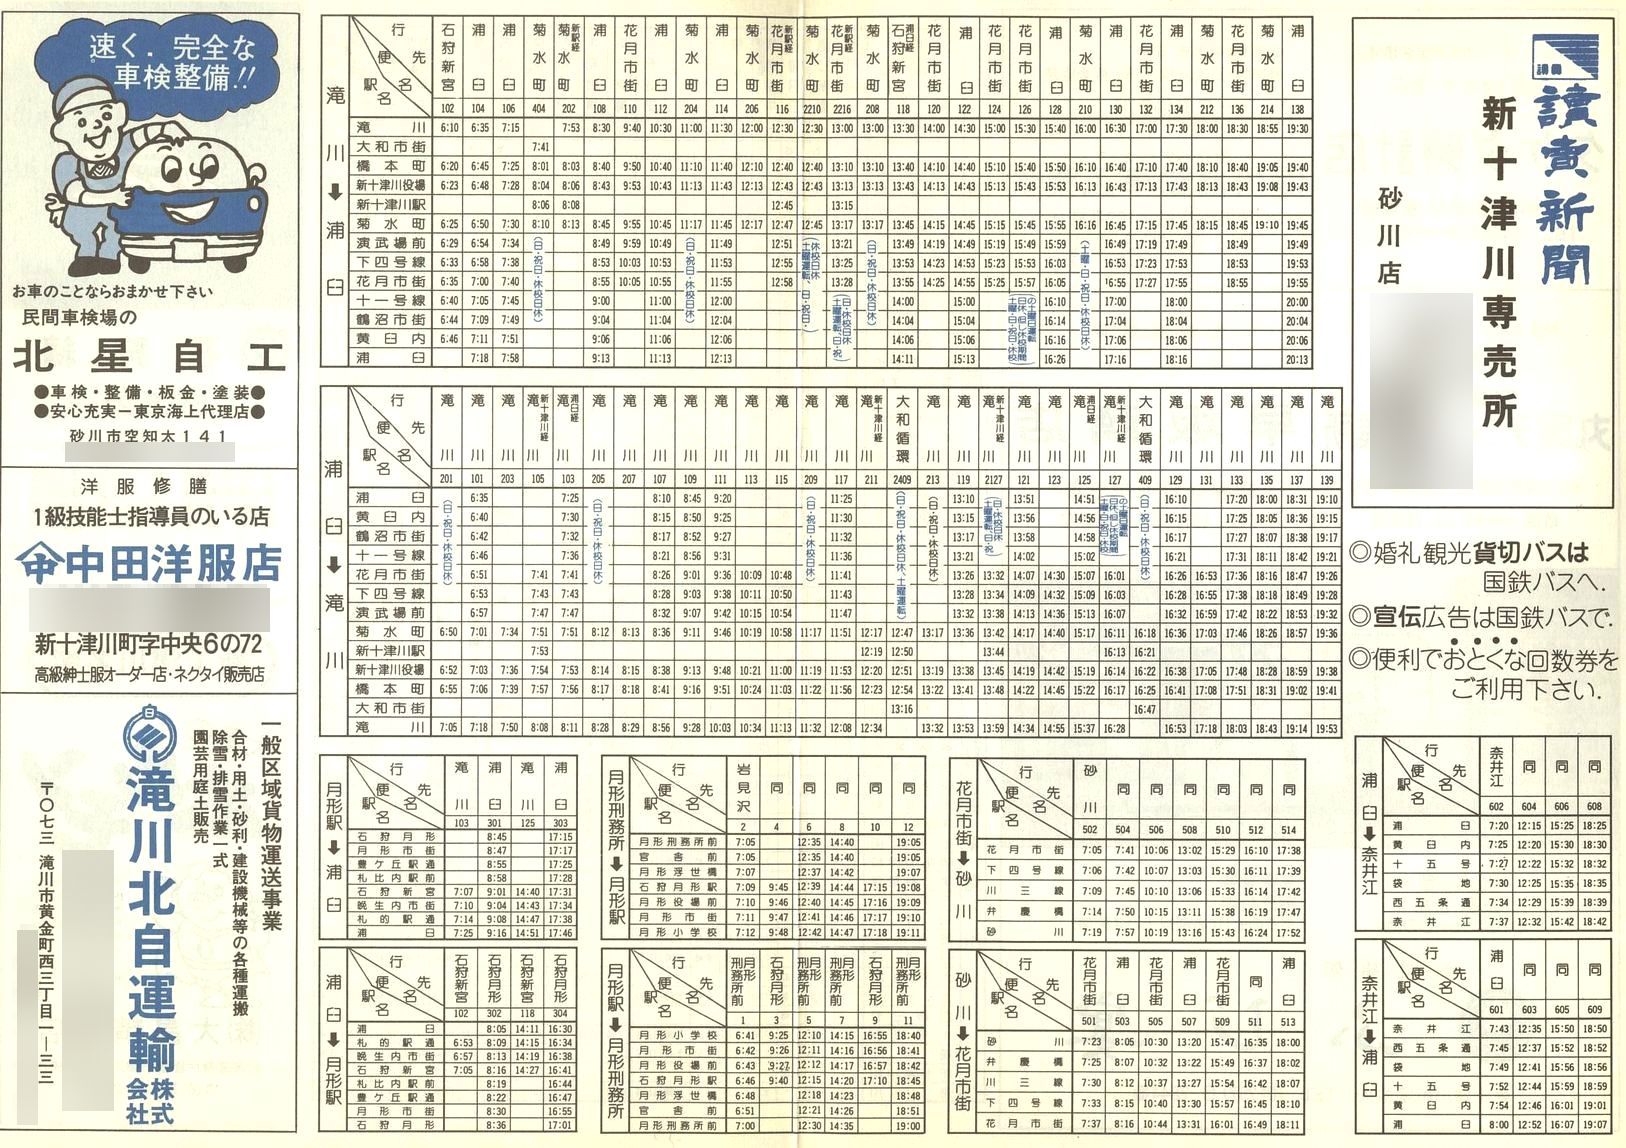 1984-05-21改正_国鉄バス_石狩線時刻表裏面